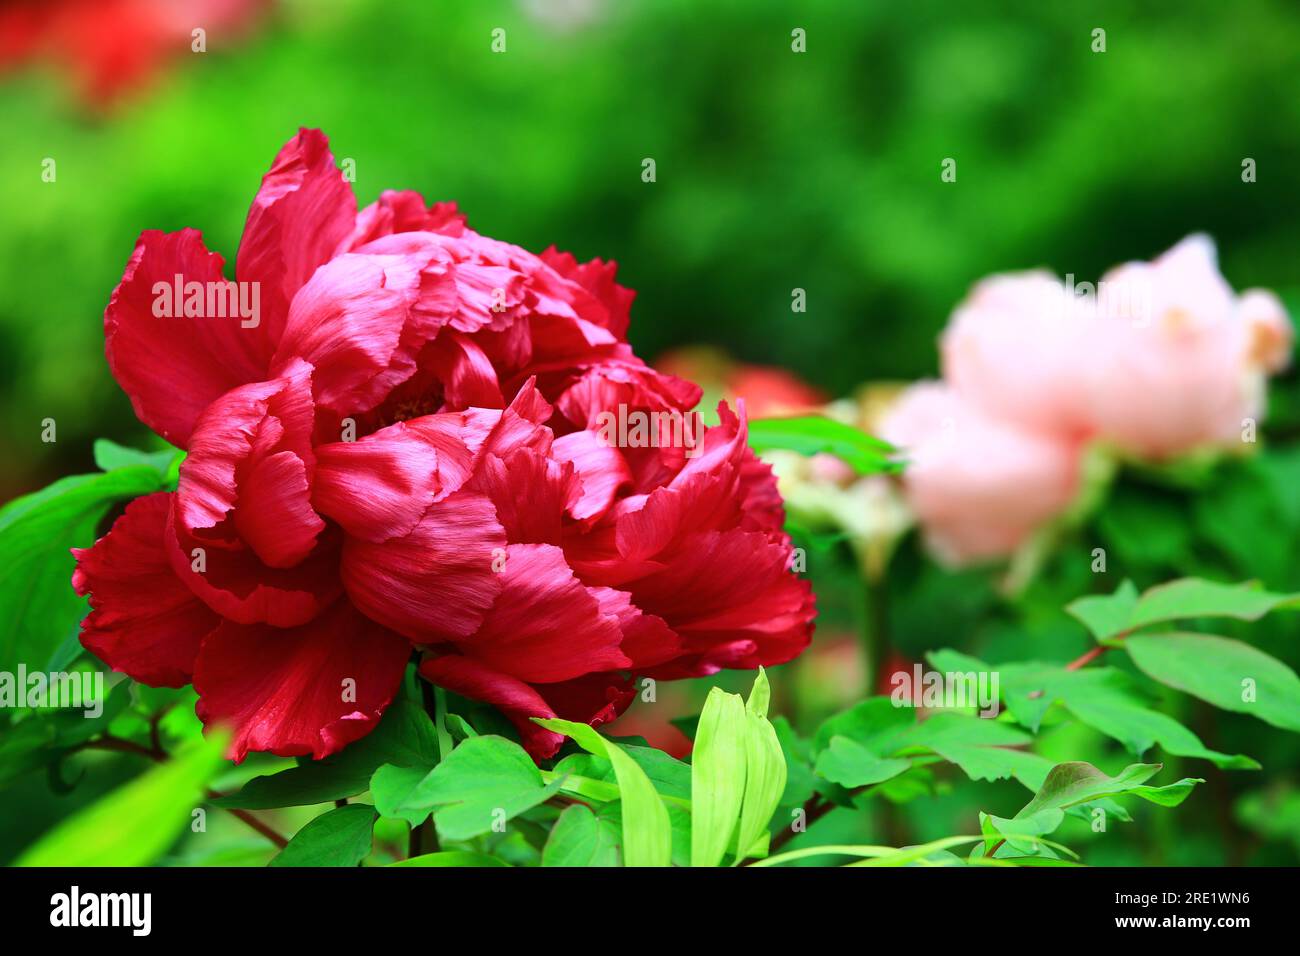 Fiore di peonia rosso fiorito con foglie verdi, primo piano del fiore di peonia rosso che fiorisce nel giardino Foto Stock